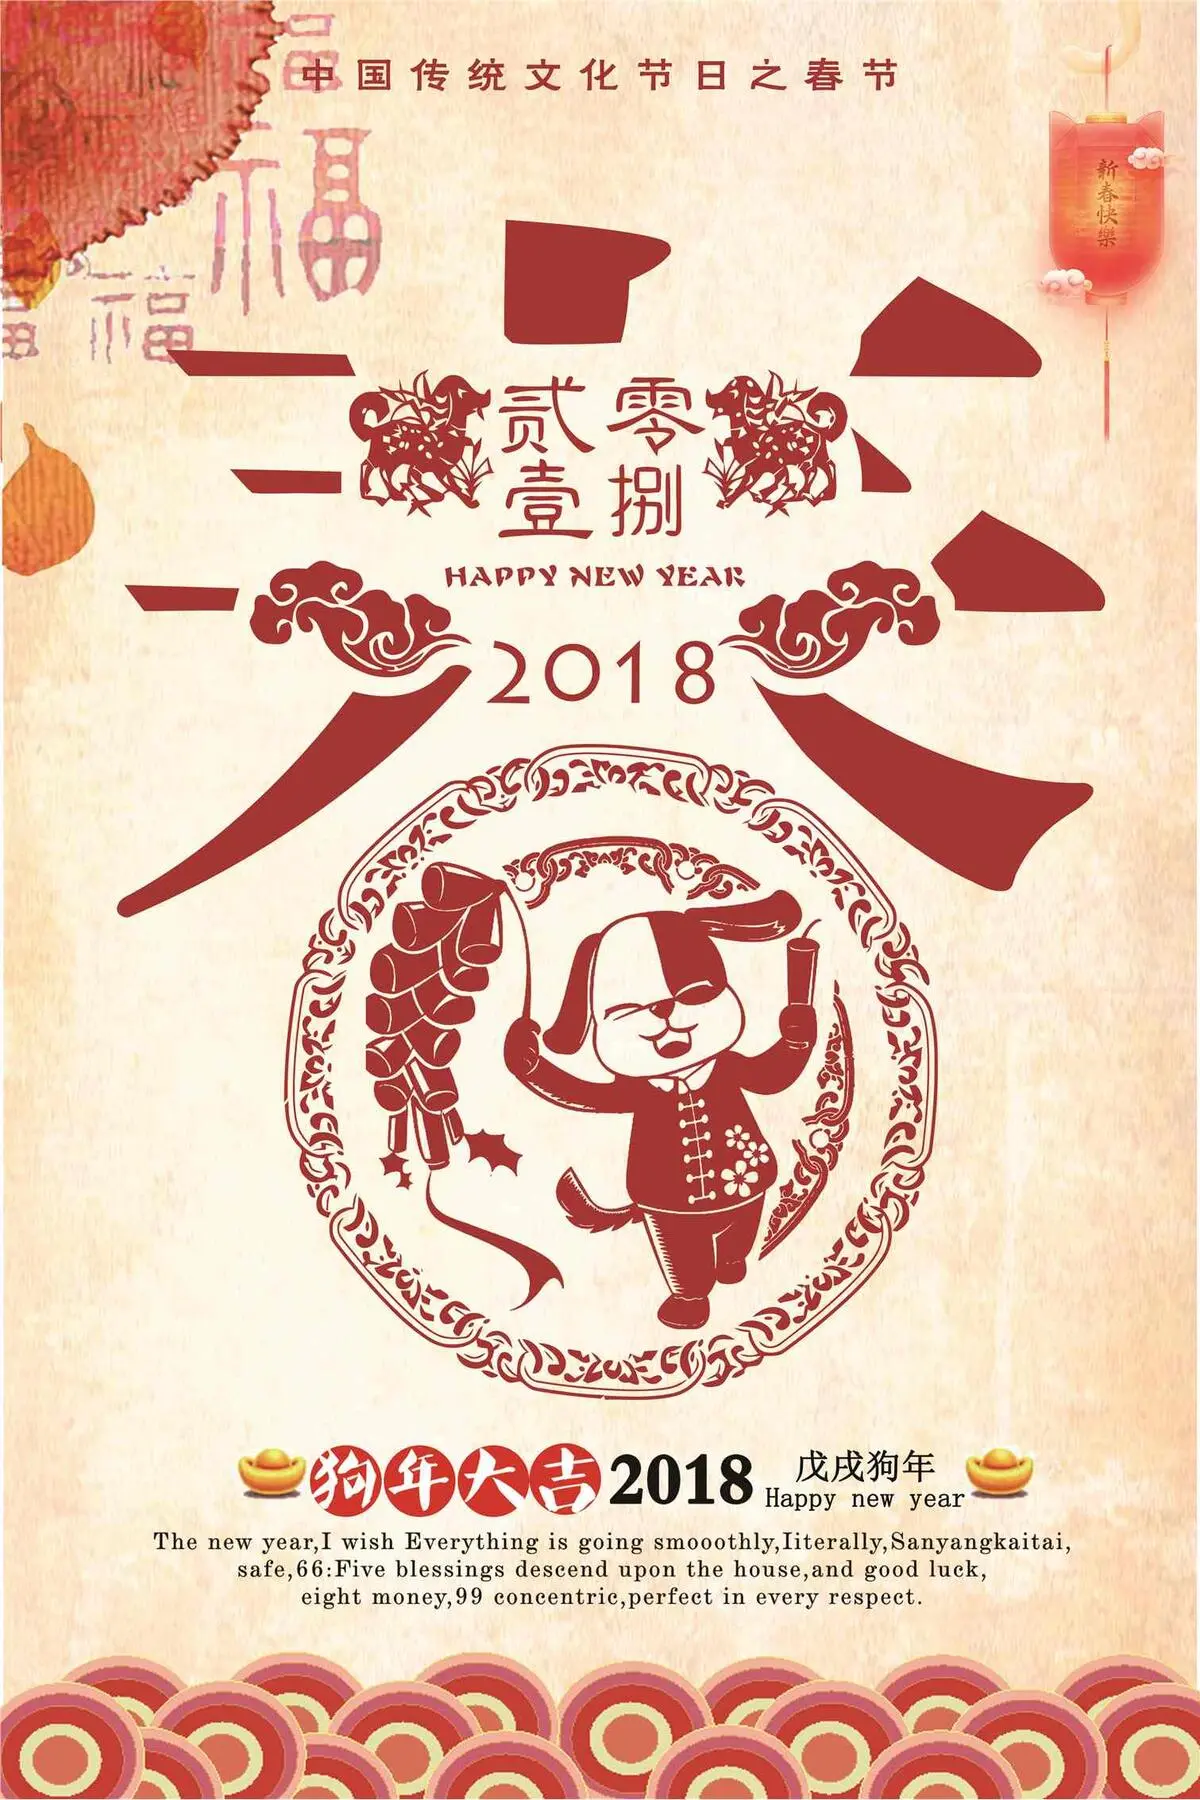 2018主题春节海报下载